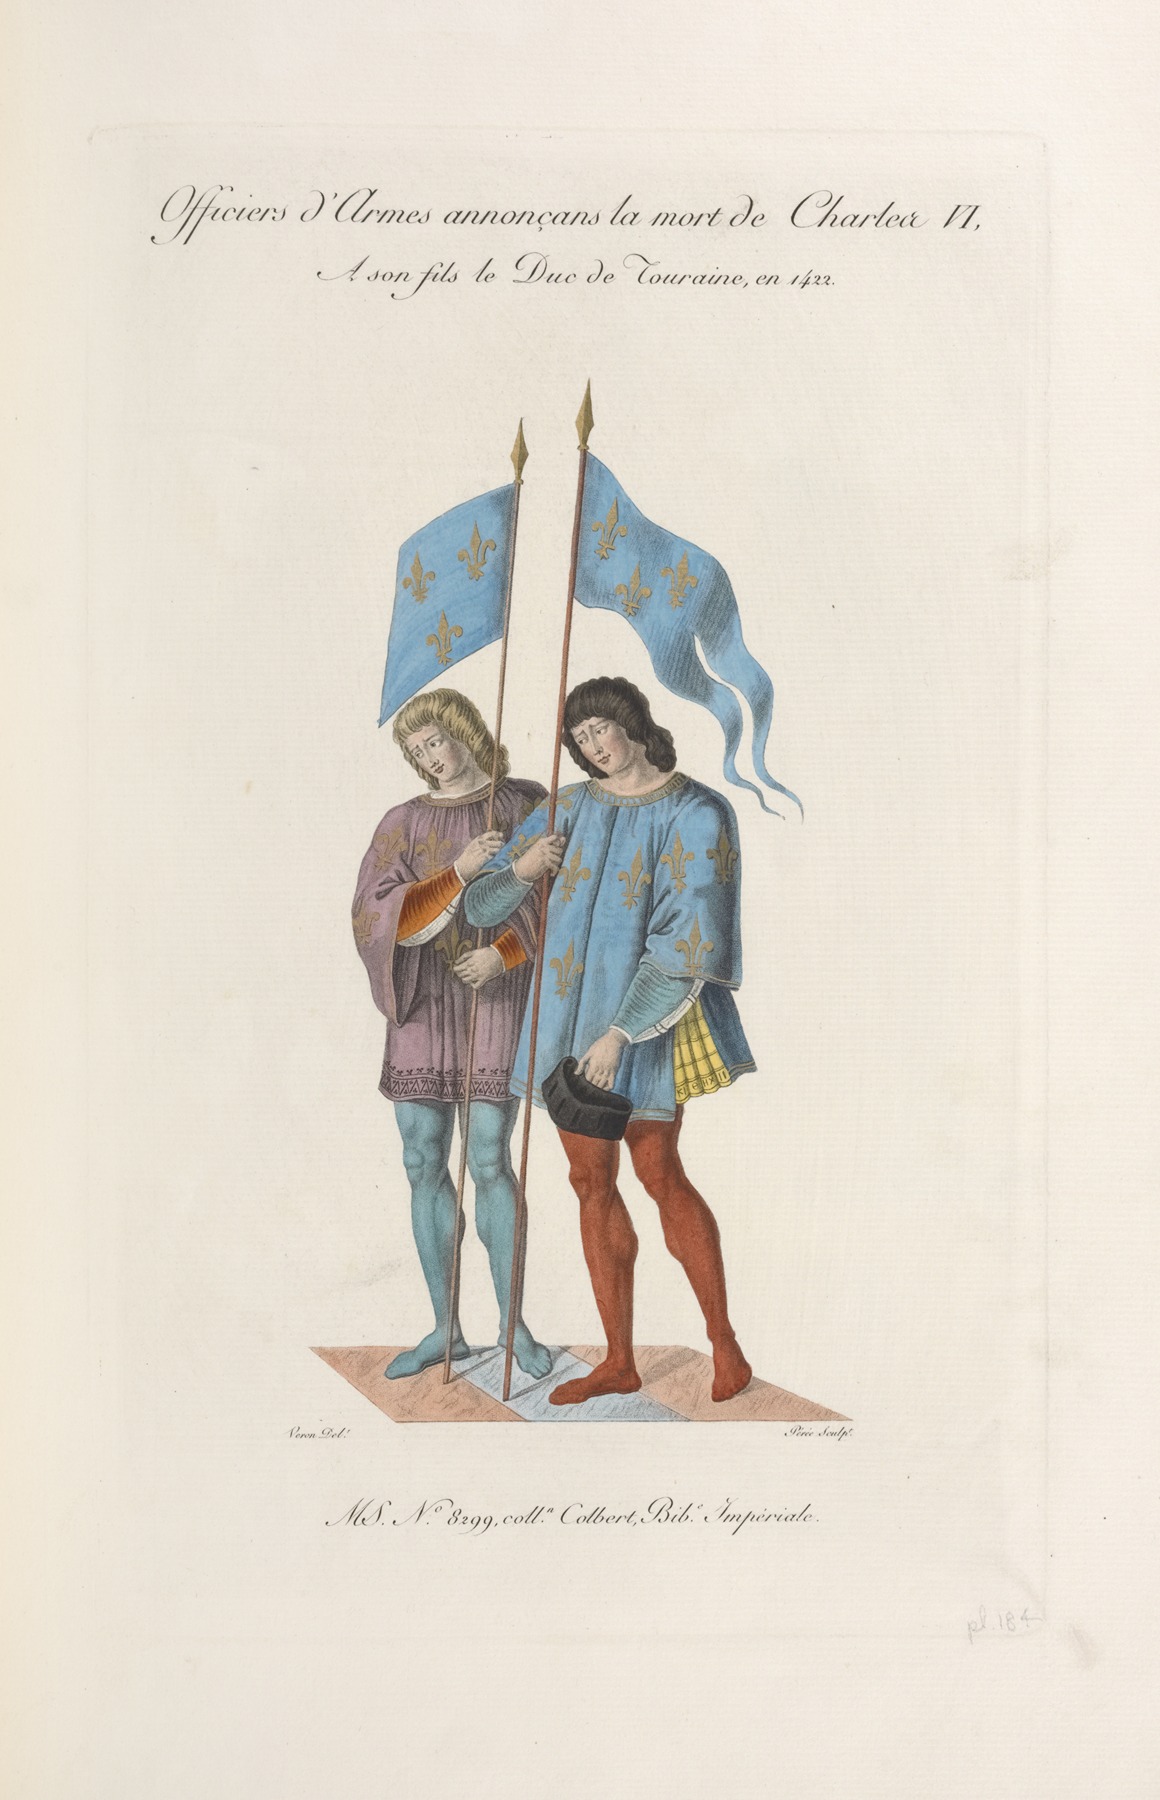 Nicolas Xavier Willemin - Officiers d’armes annonçans la mort de Charles VI, à son fils le duc de Touraine, en 1422.